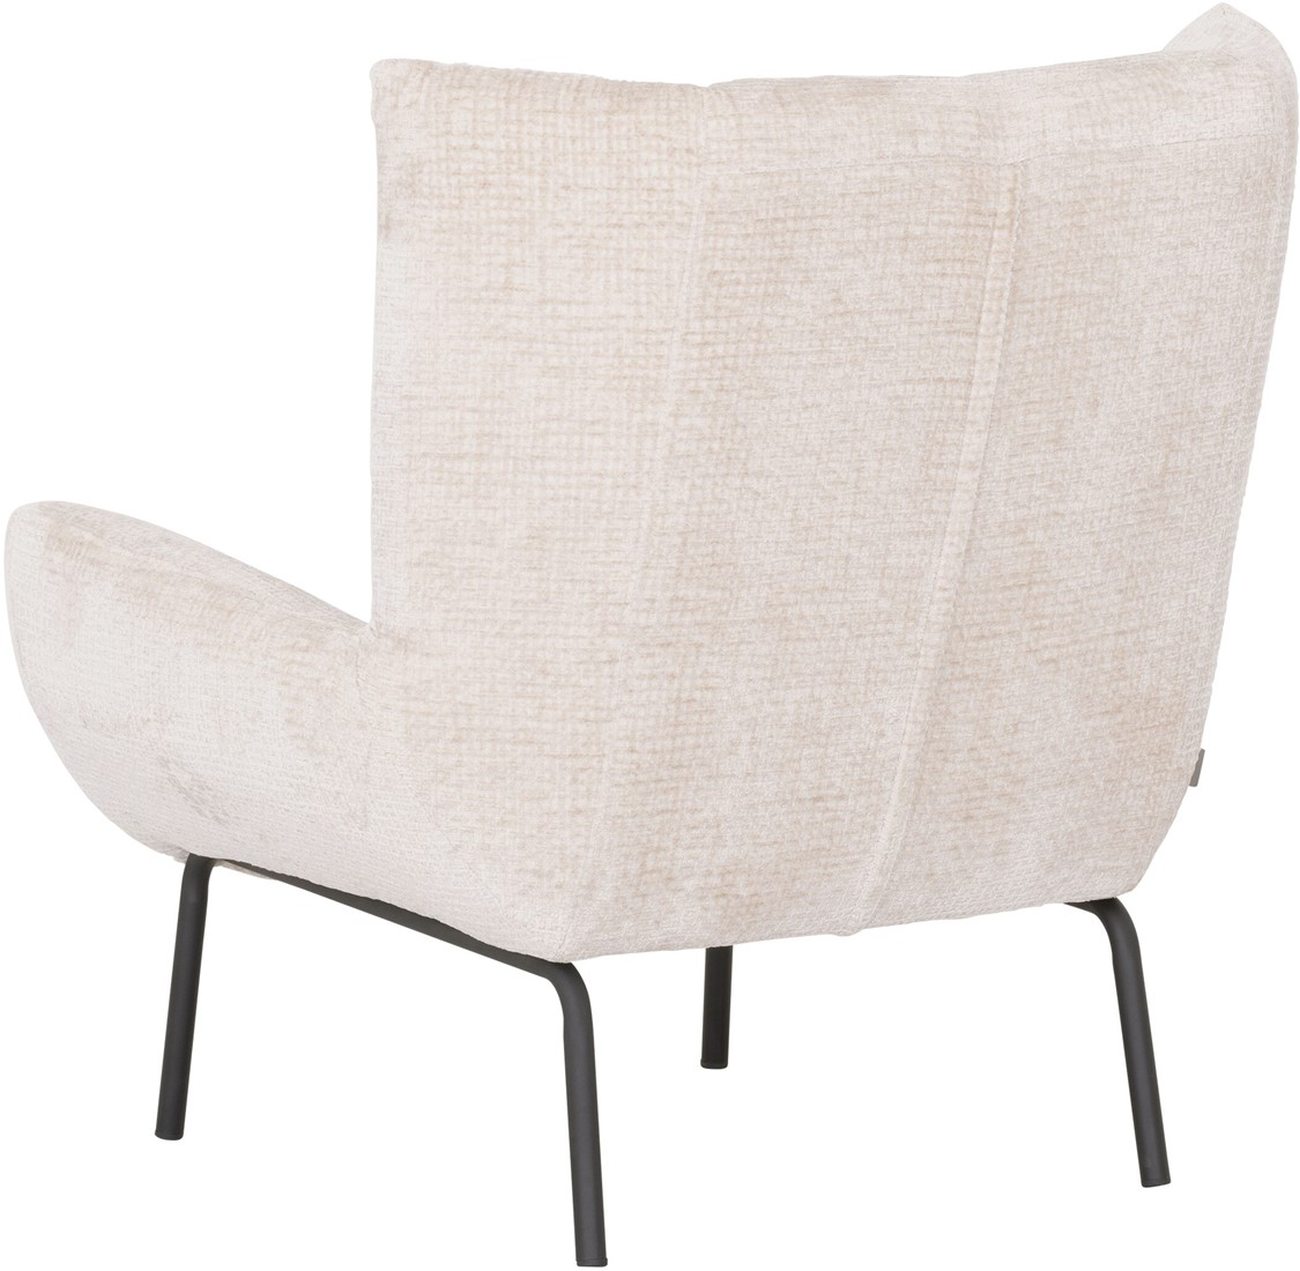 Der Sessel Astro überzeugt mit seinem modernen Design. Gefertigt wurde er aus Stoff, welcher einen natürlichen Farbton besitzt. Das Gestell ist aus Metall und hat eine schwarze Farbe. Der Sessel besitzt eine Größe von 97x92x96 cm.